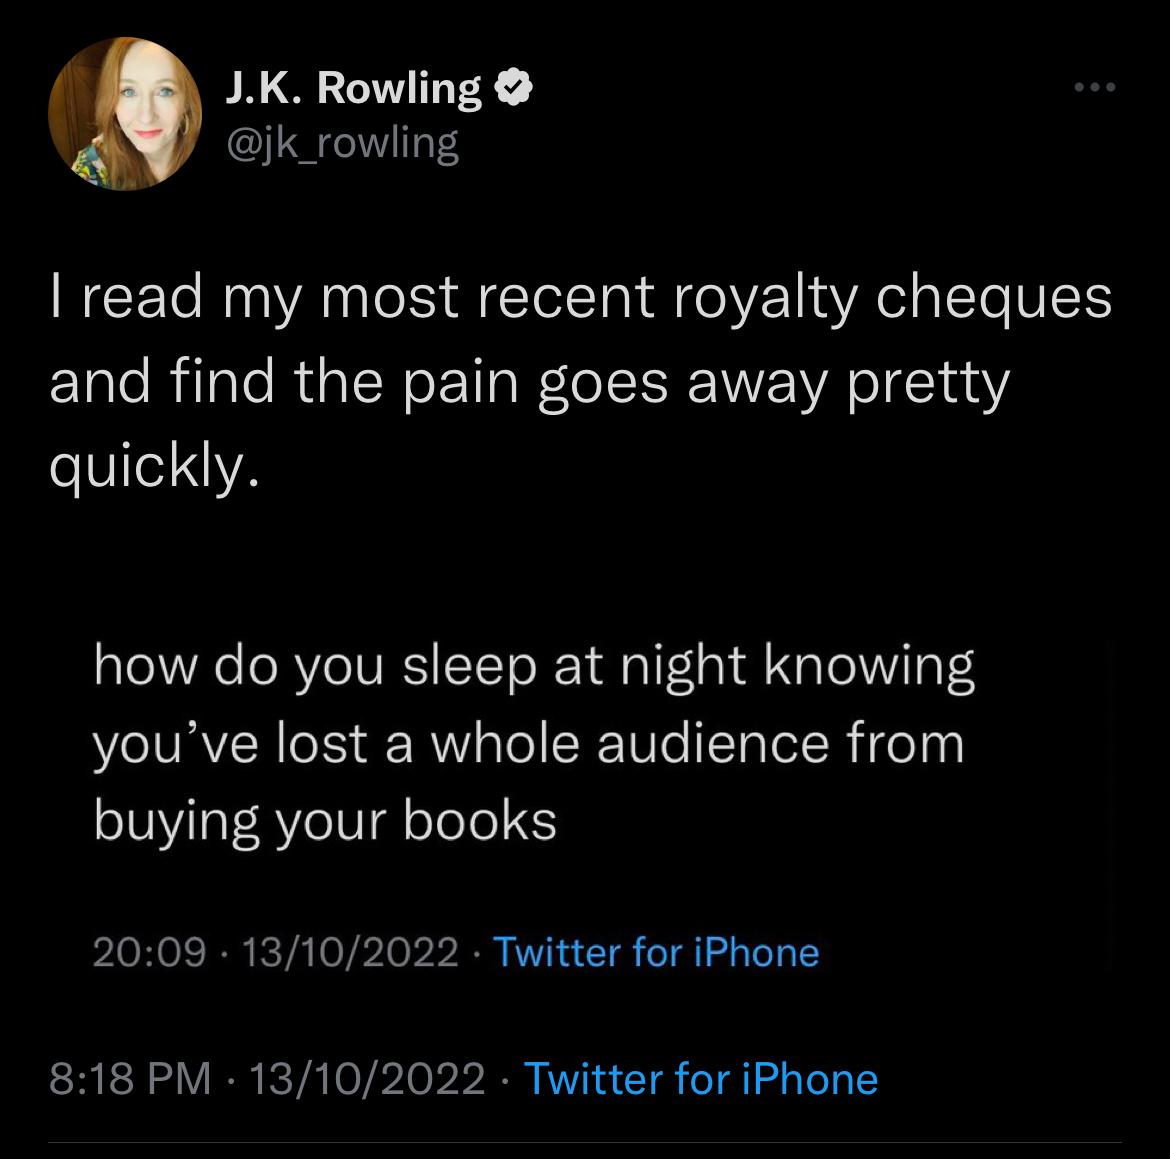 J.K Rowling's Tweet